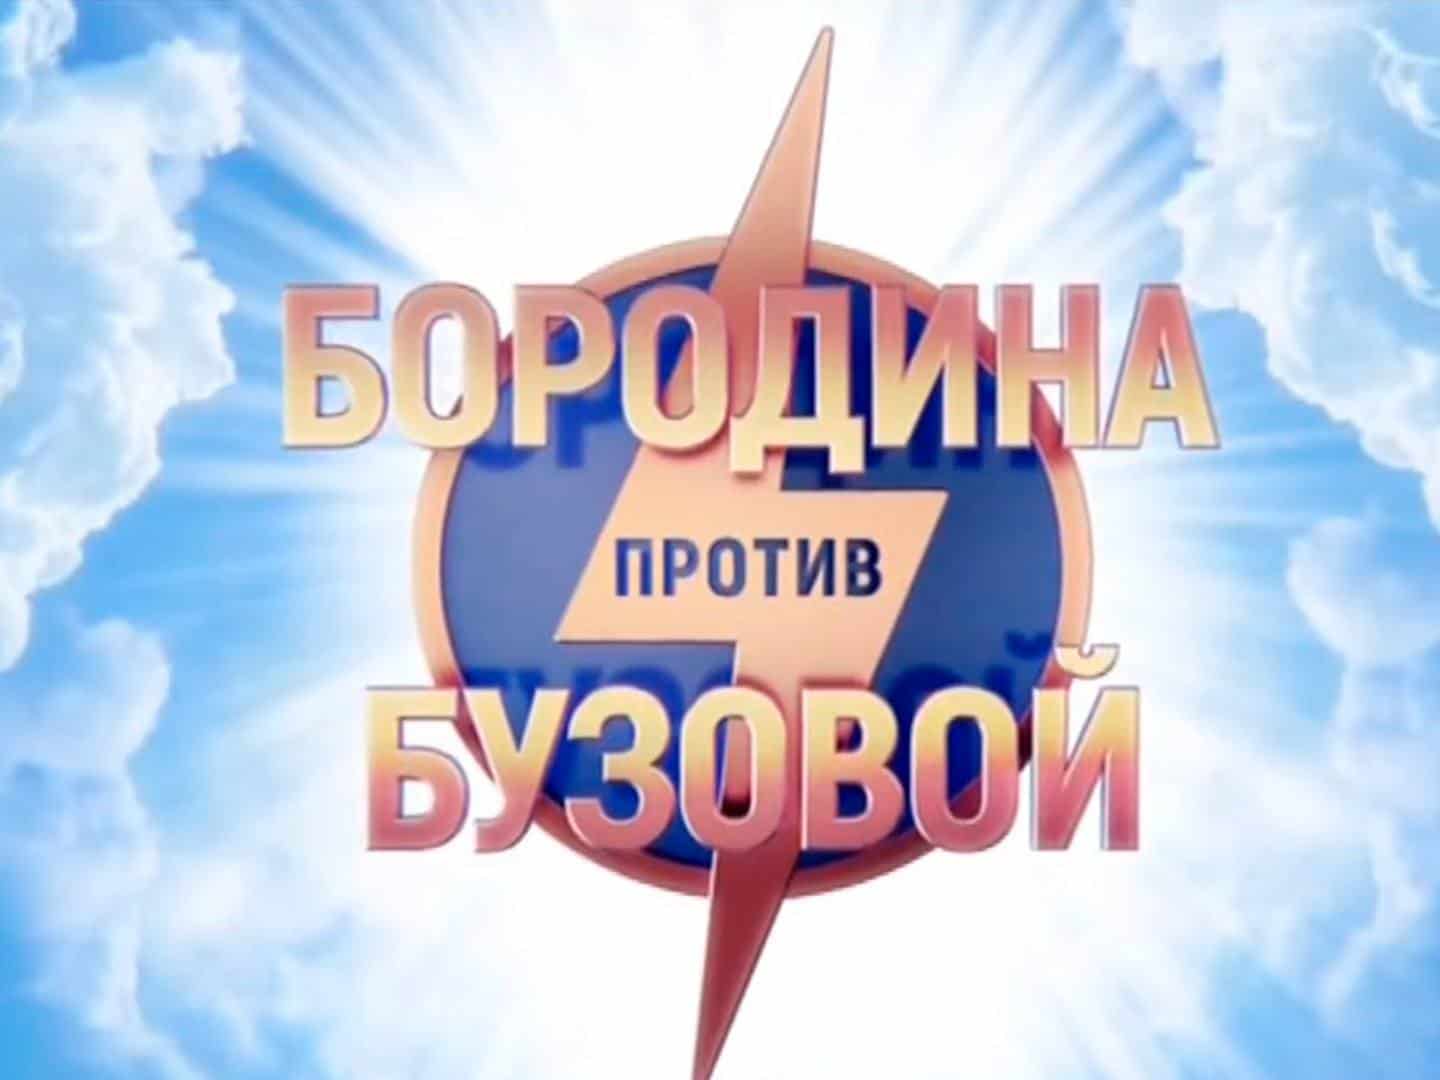 Бородина-против-Бузовой-261-серия